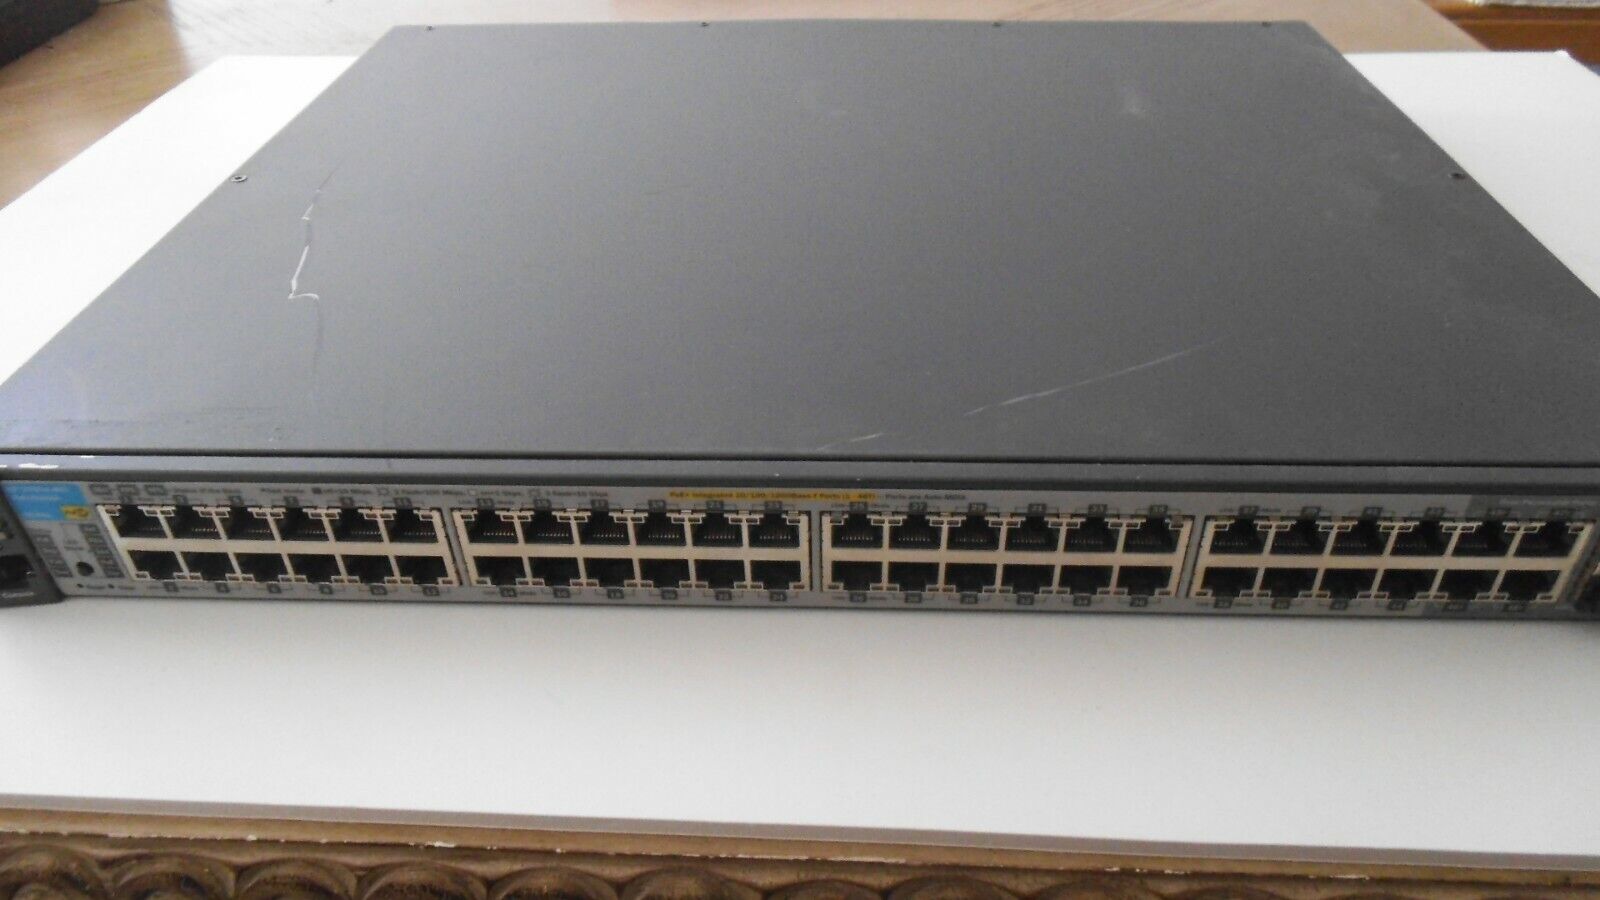 HP ProCurve Switch 2910al-48G PoE+Switch - J9148A - 48 Ports